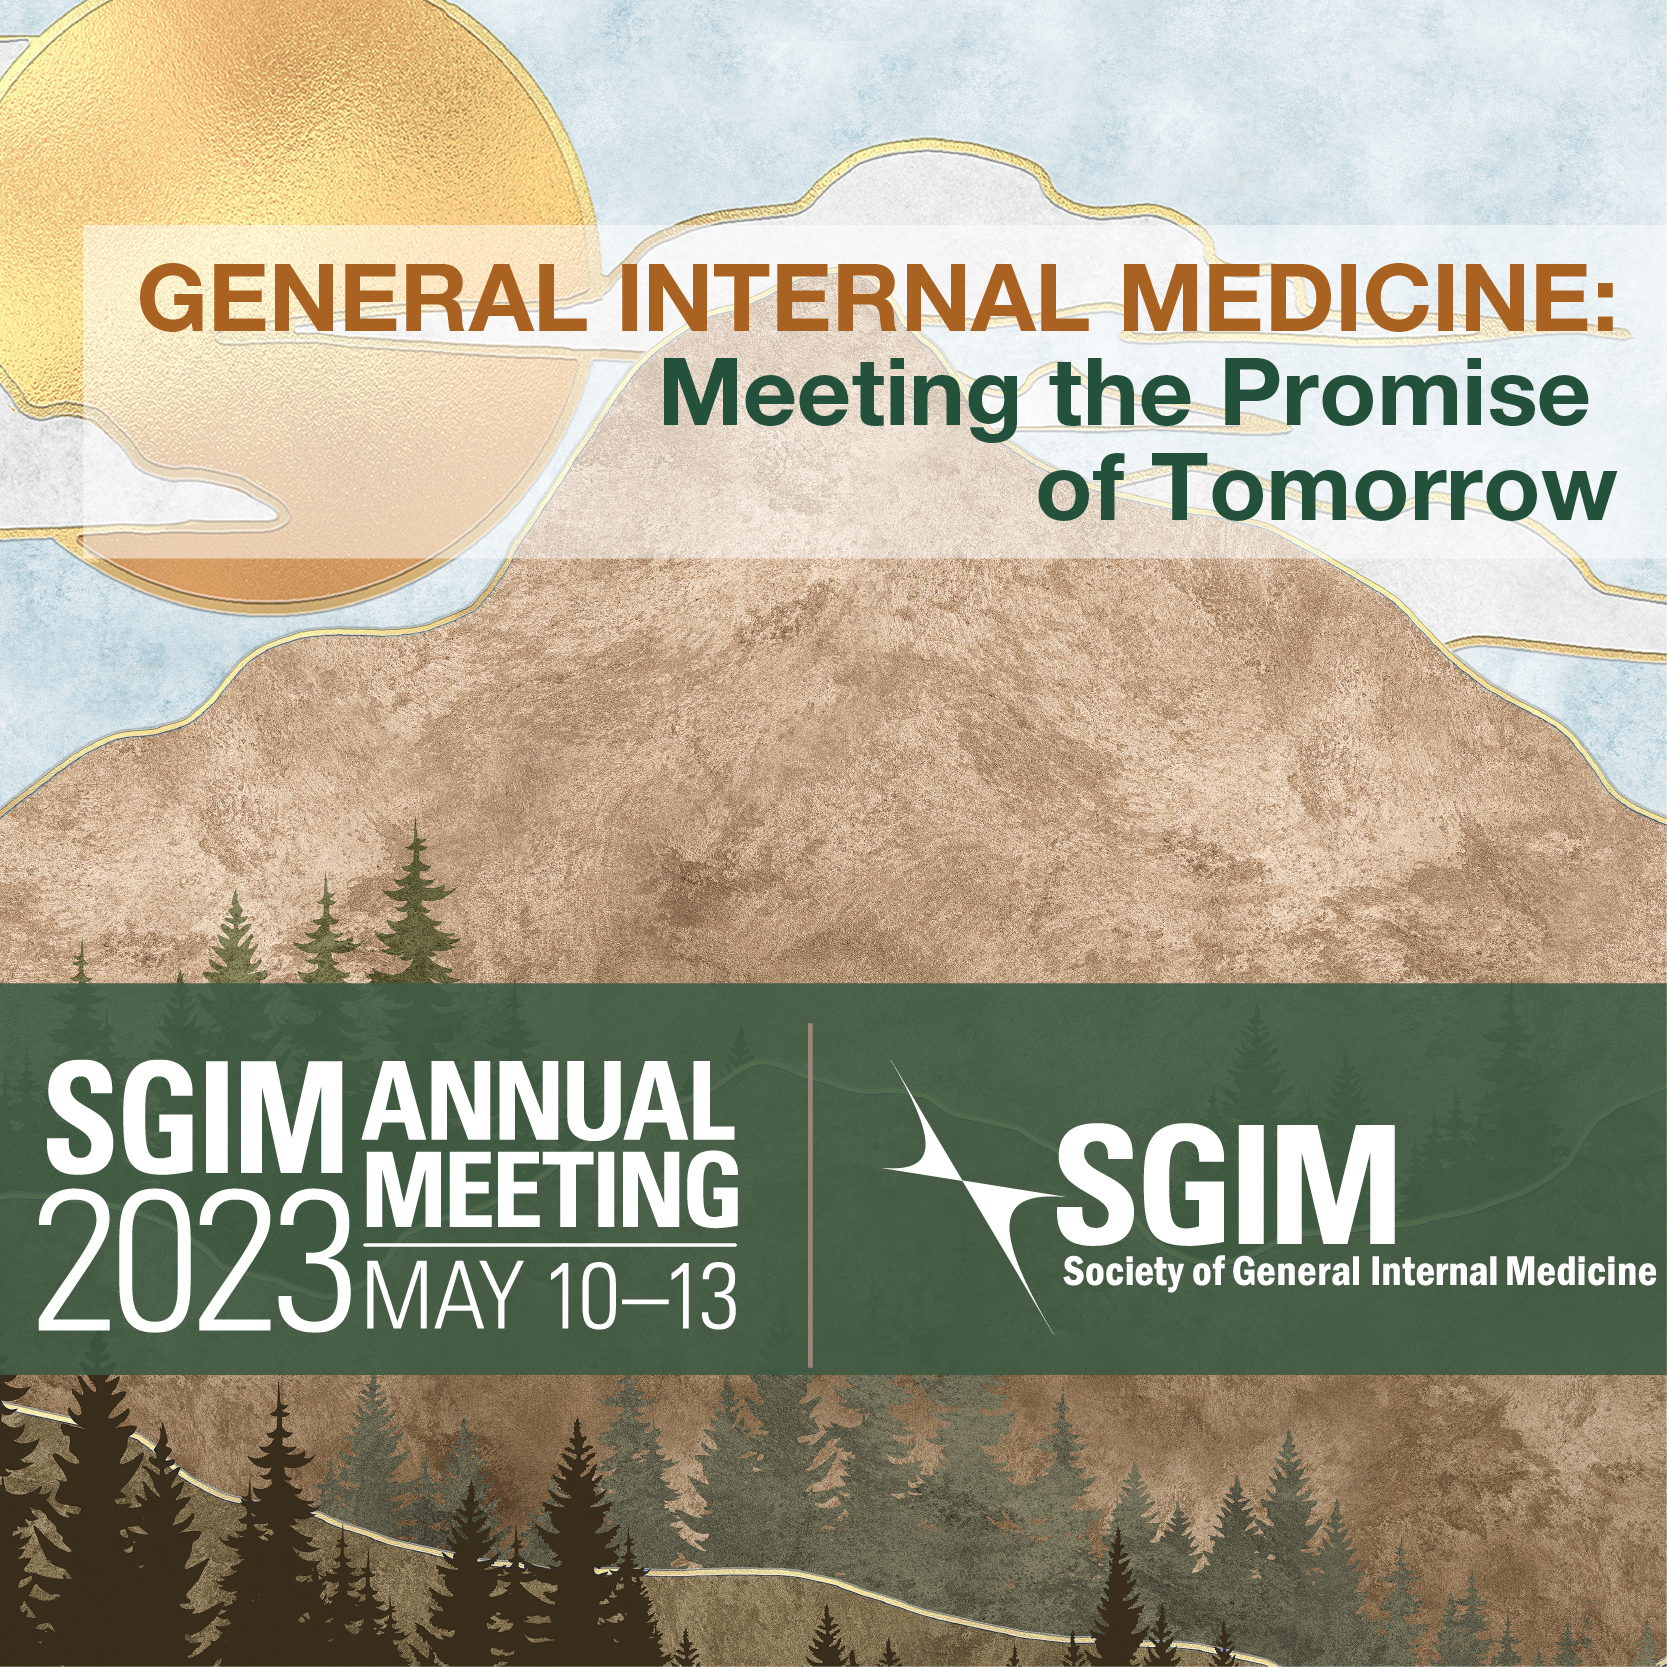 SGIM Annual Meeting 2023